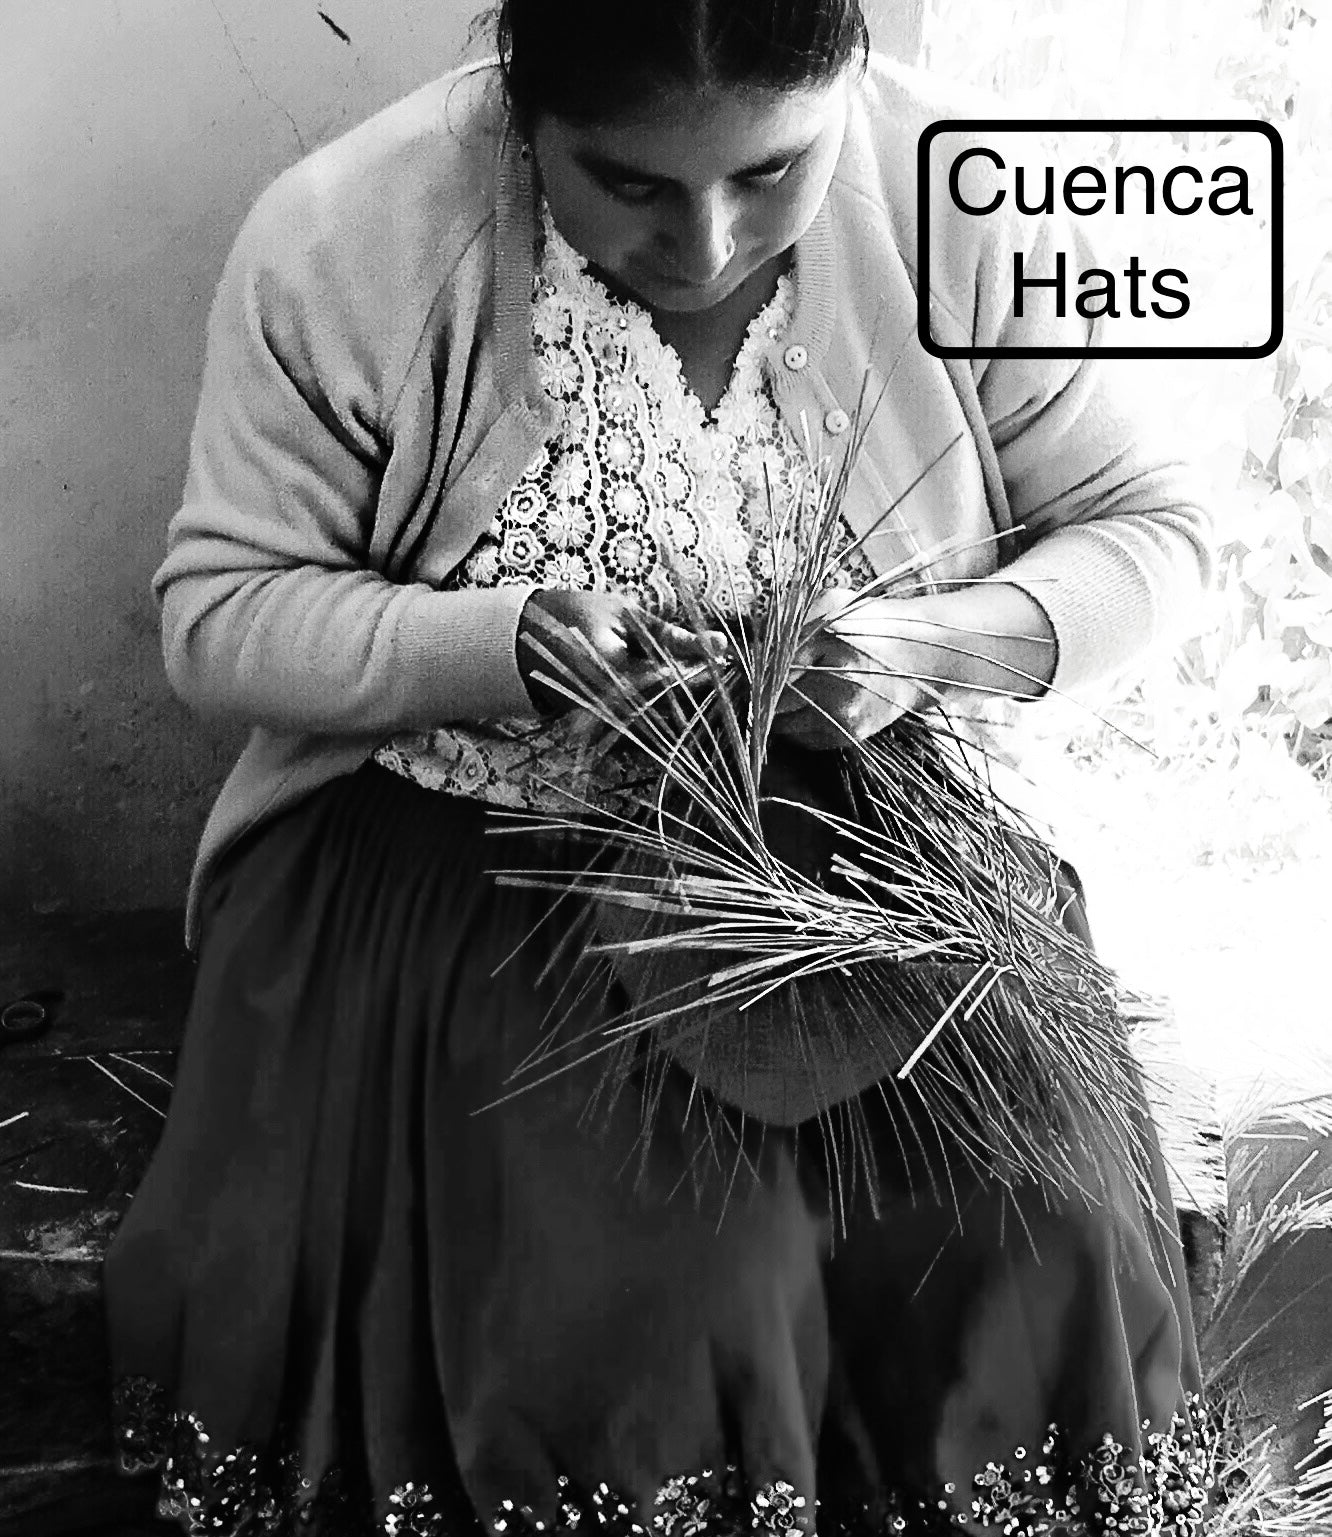 Panama Hats made in Cuenca Ecuador